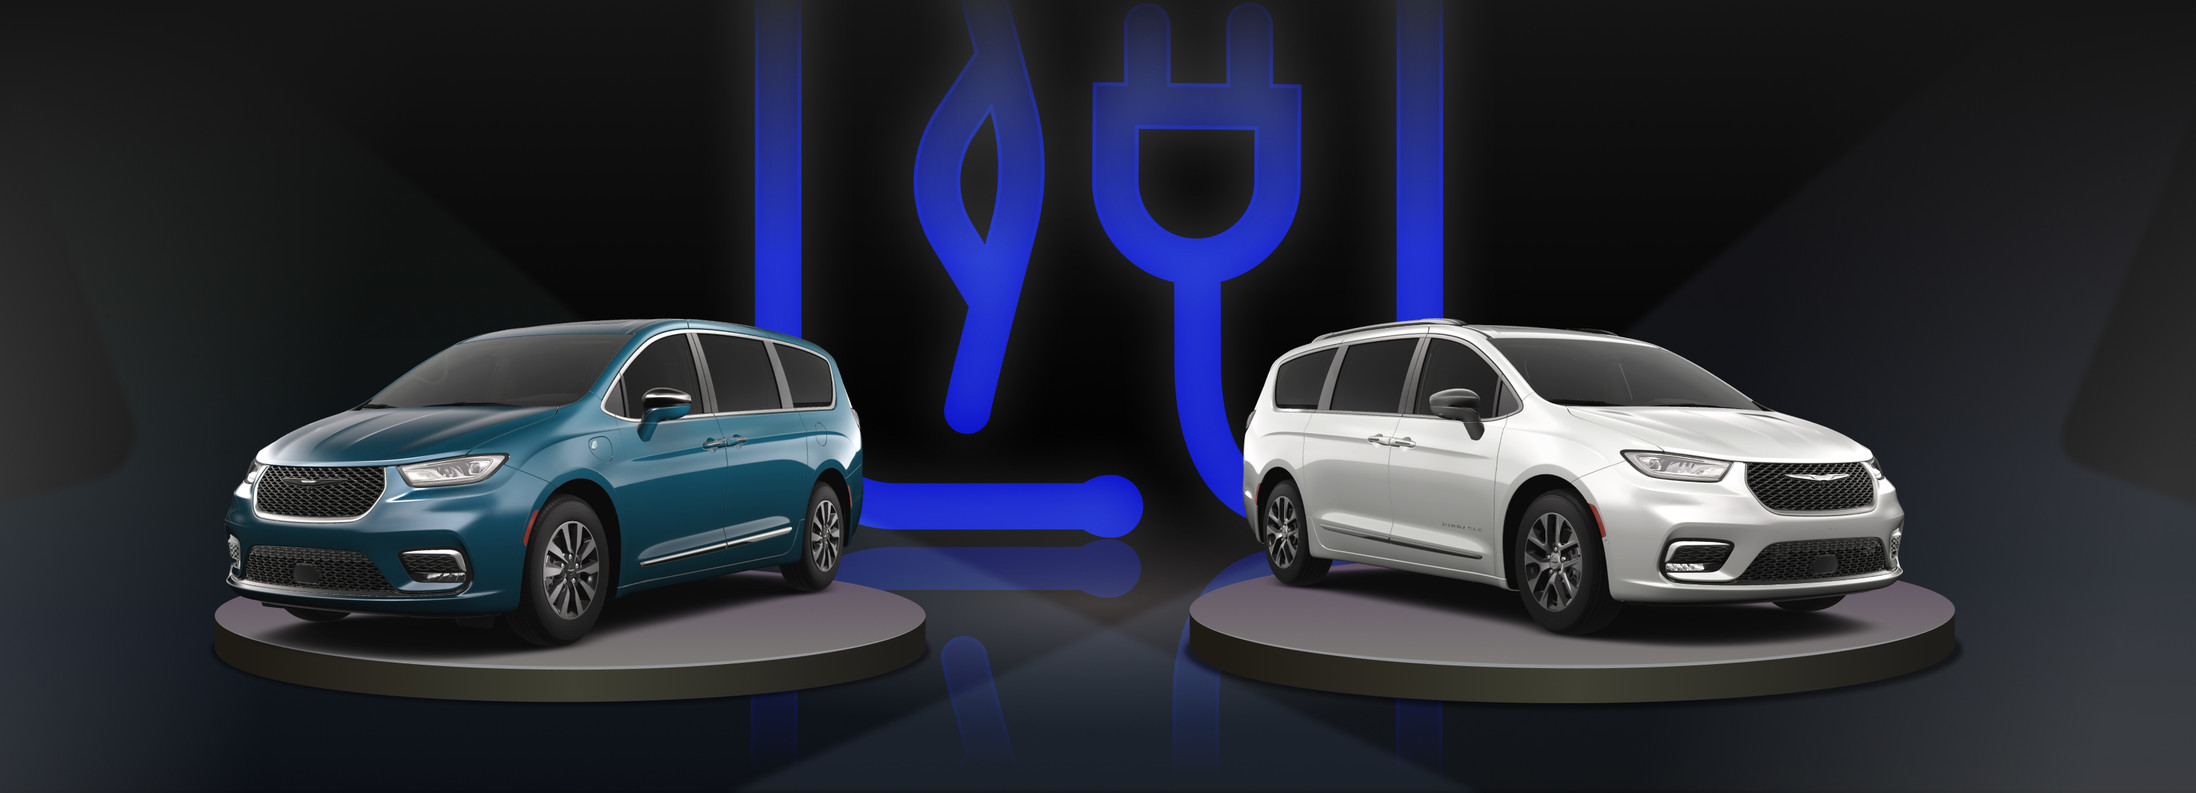 Vue d'une Chrysler EV 2023 bleue et d'une Chrysler EV 2023 blanche sur fond noir.